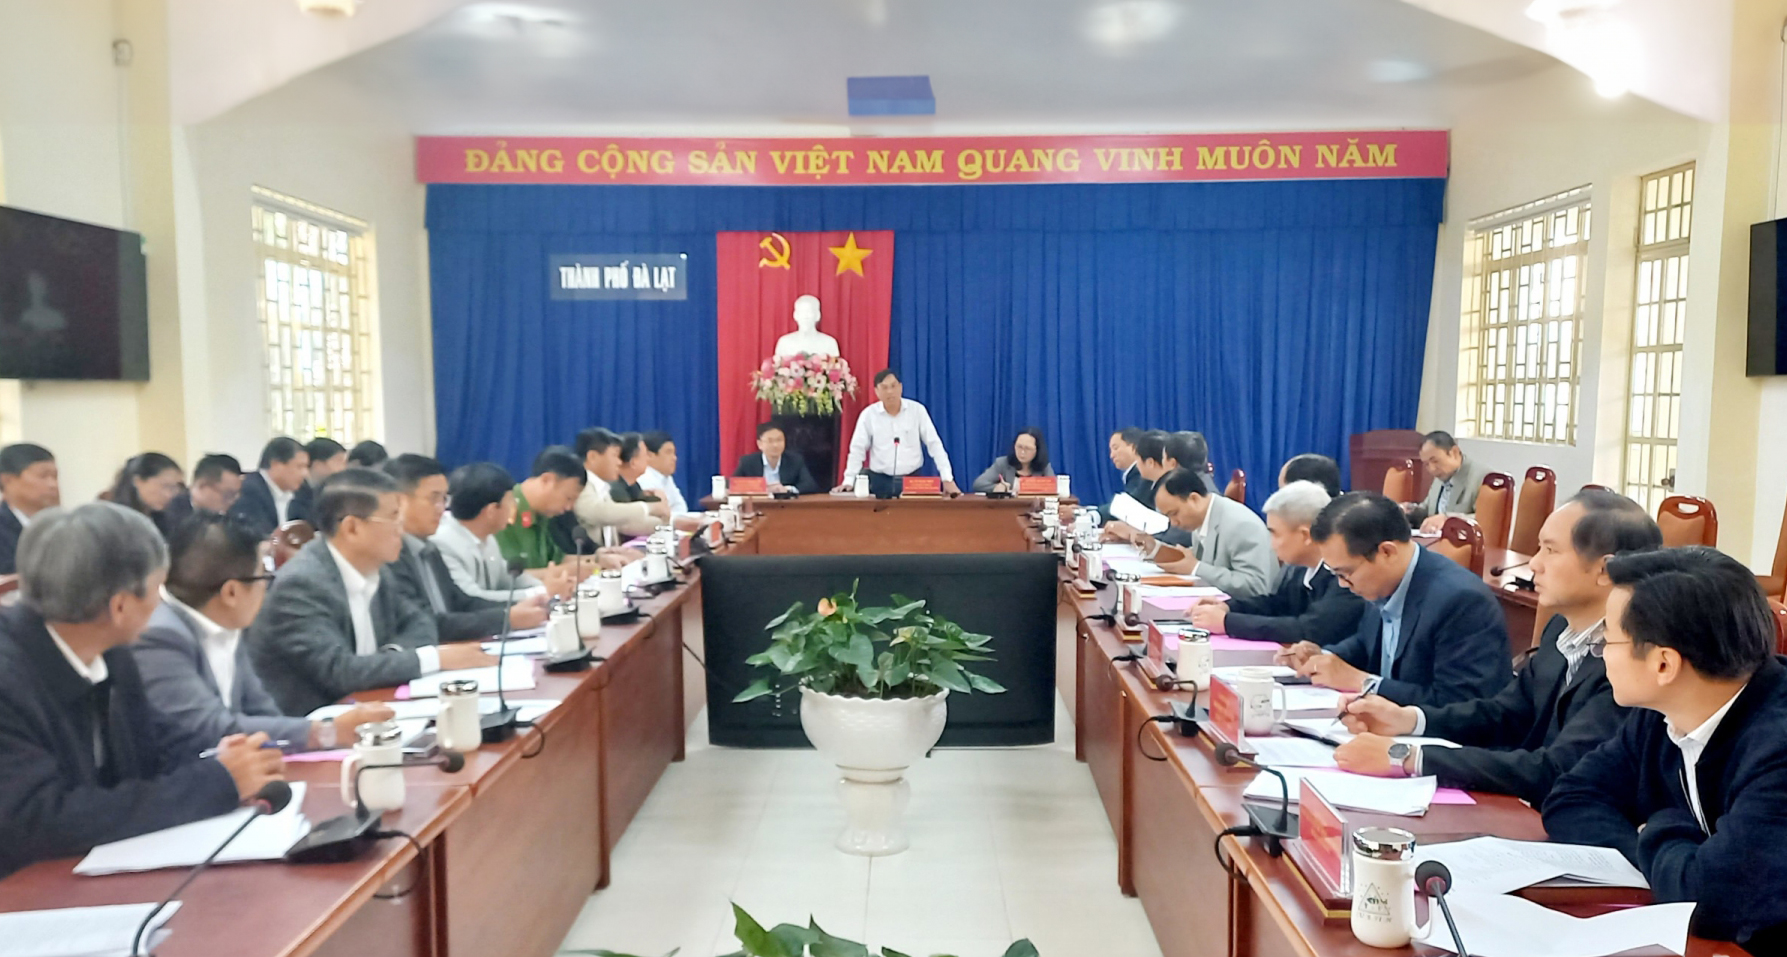 Phó Chủ tịch UBND tỉnh Võ Ngọc Hiệp: Cương quyết xử lý ngay từ đầu các trường hợp vi phạm trật tự xây dựng